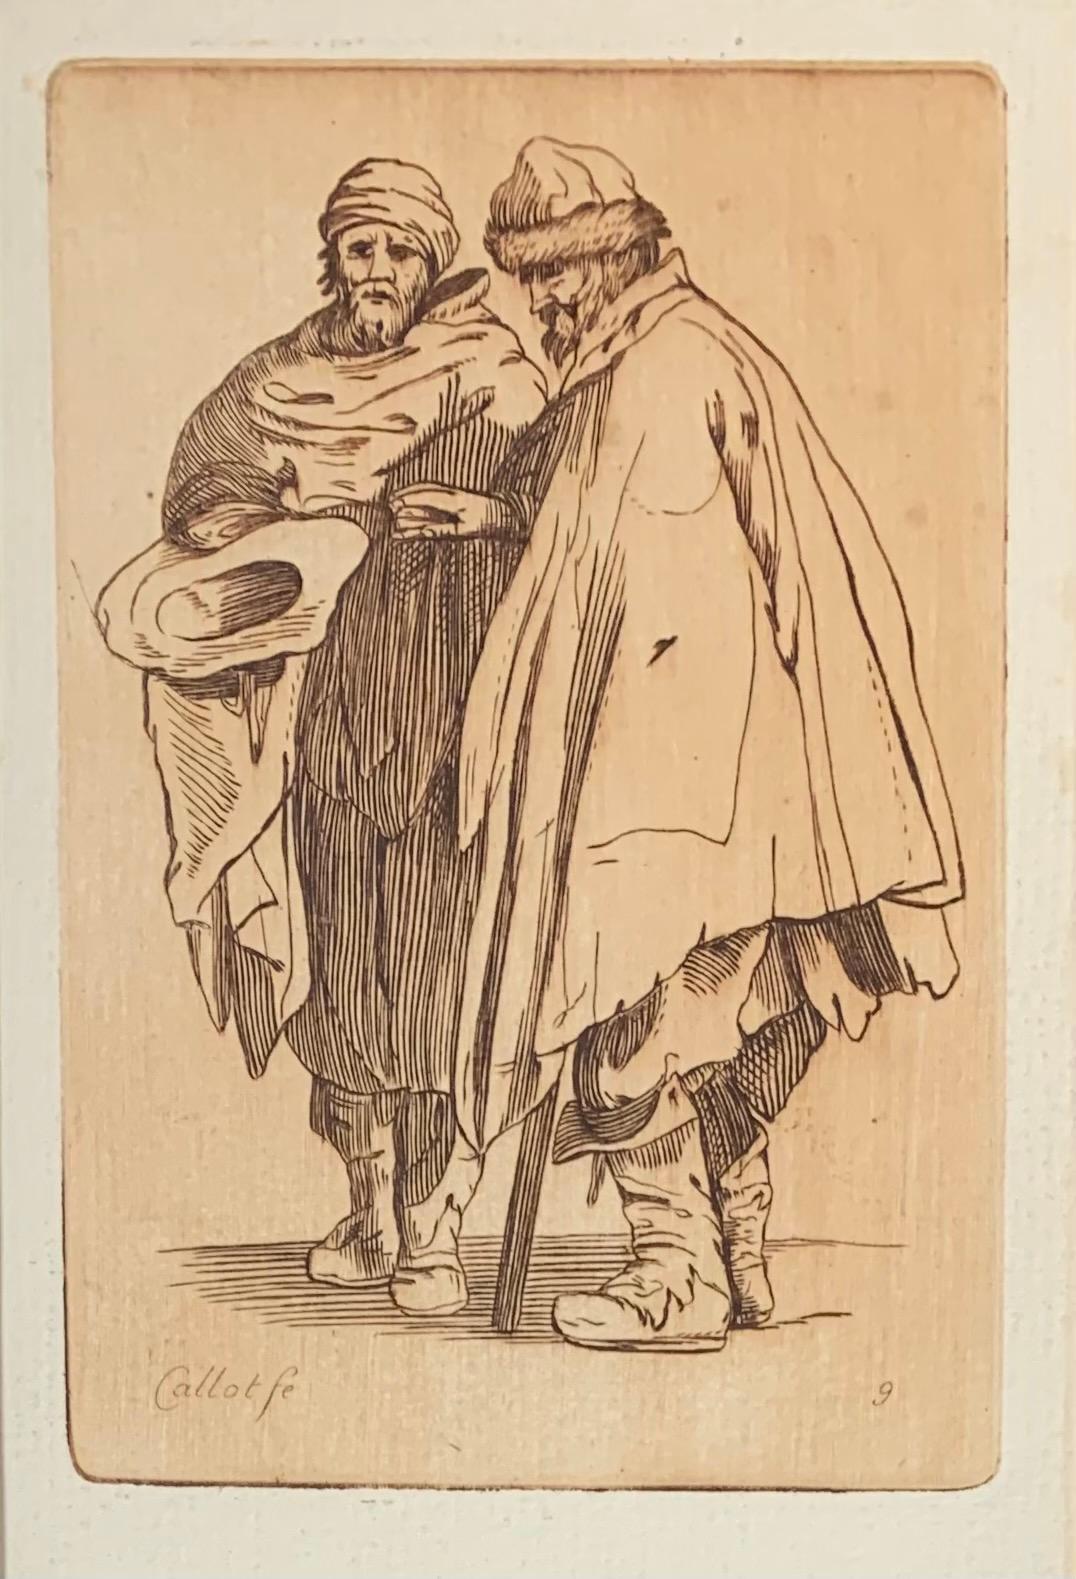 Jacques Callot Portrait Print - 17th Century Renaissance Etching, Les Gueux #9 